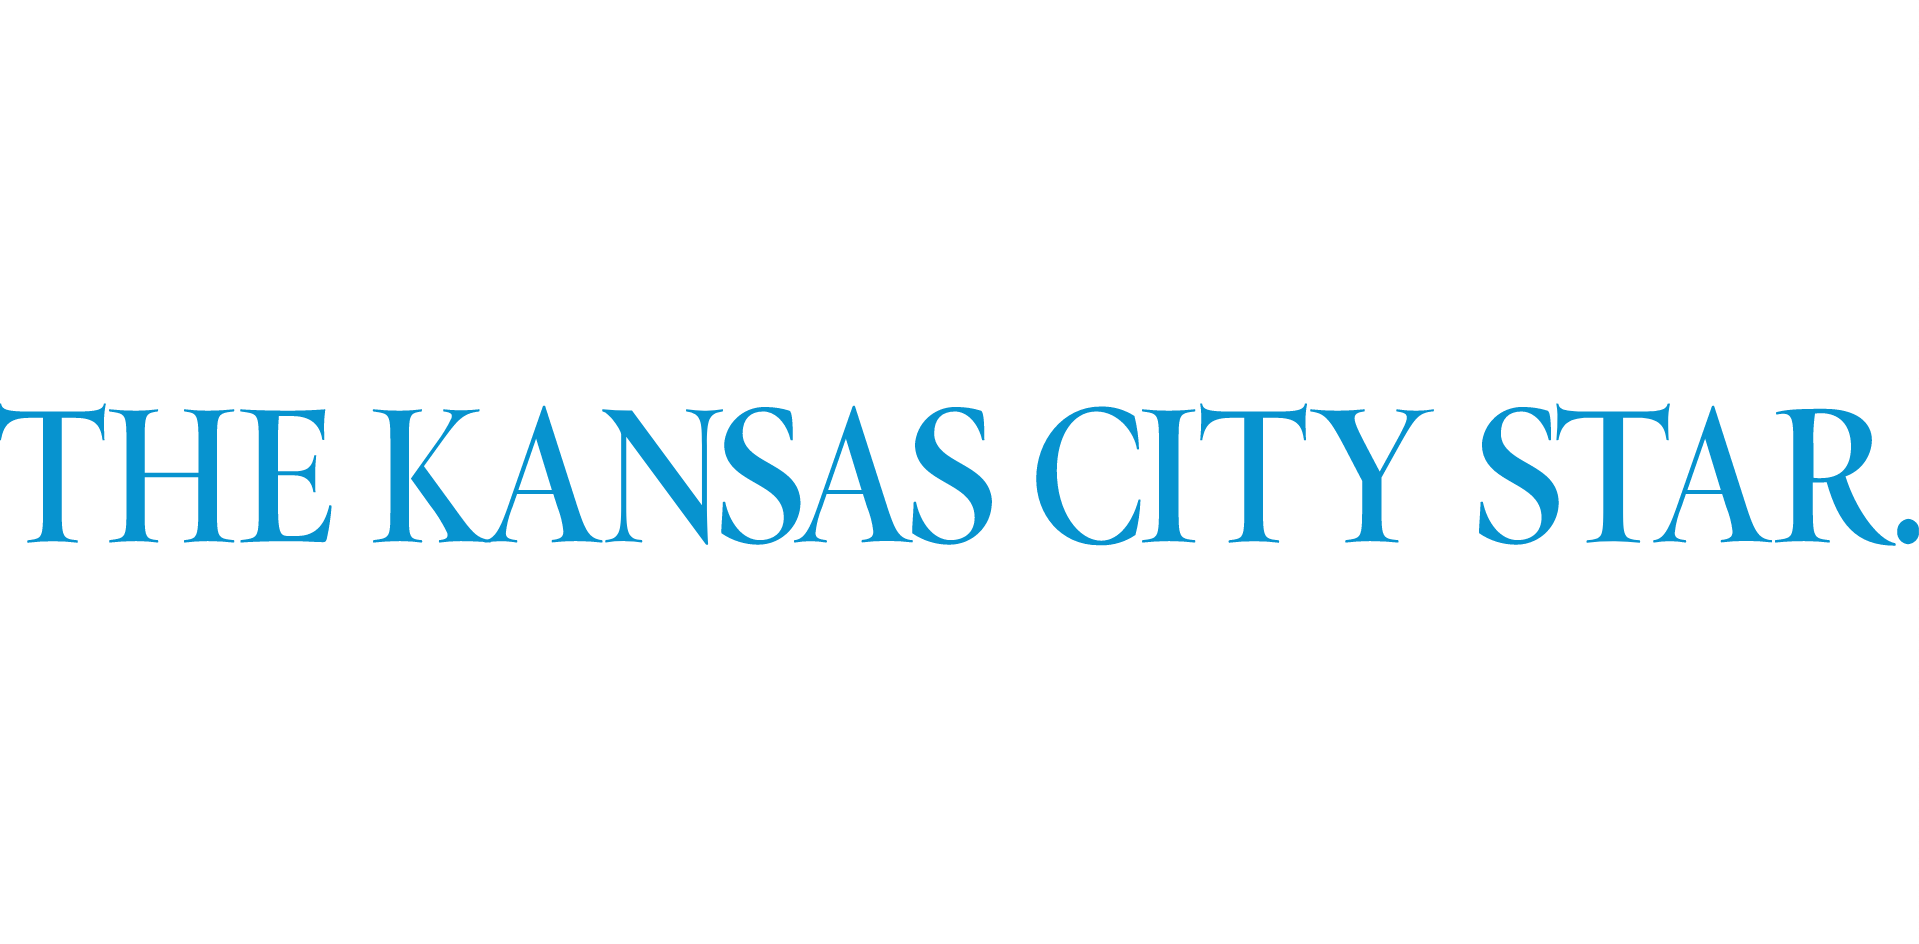 The Kansas Star logo